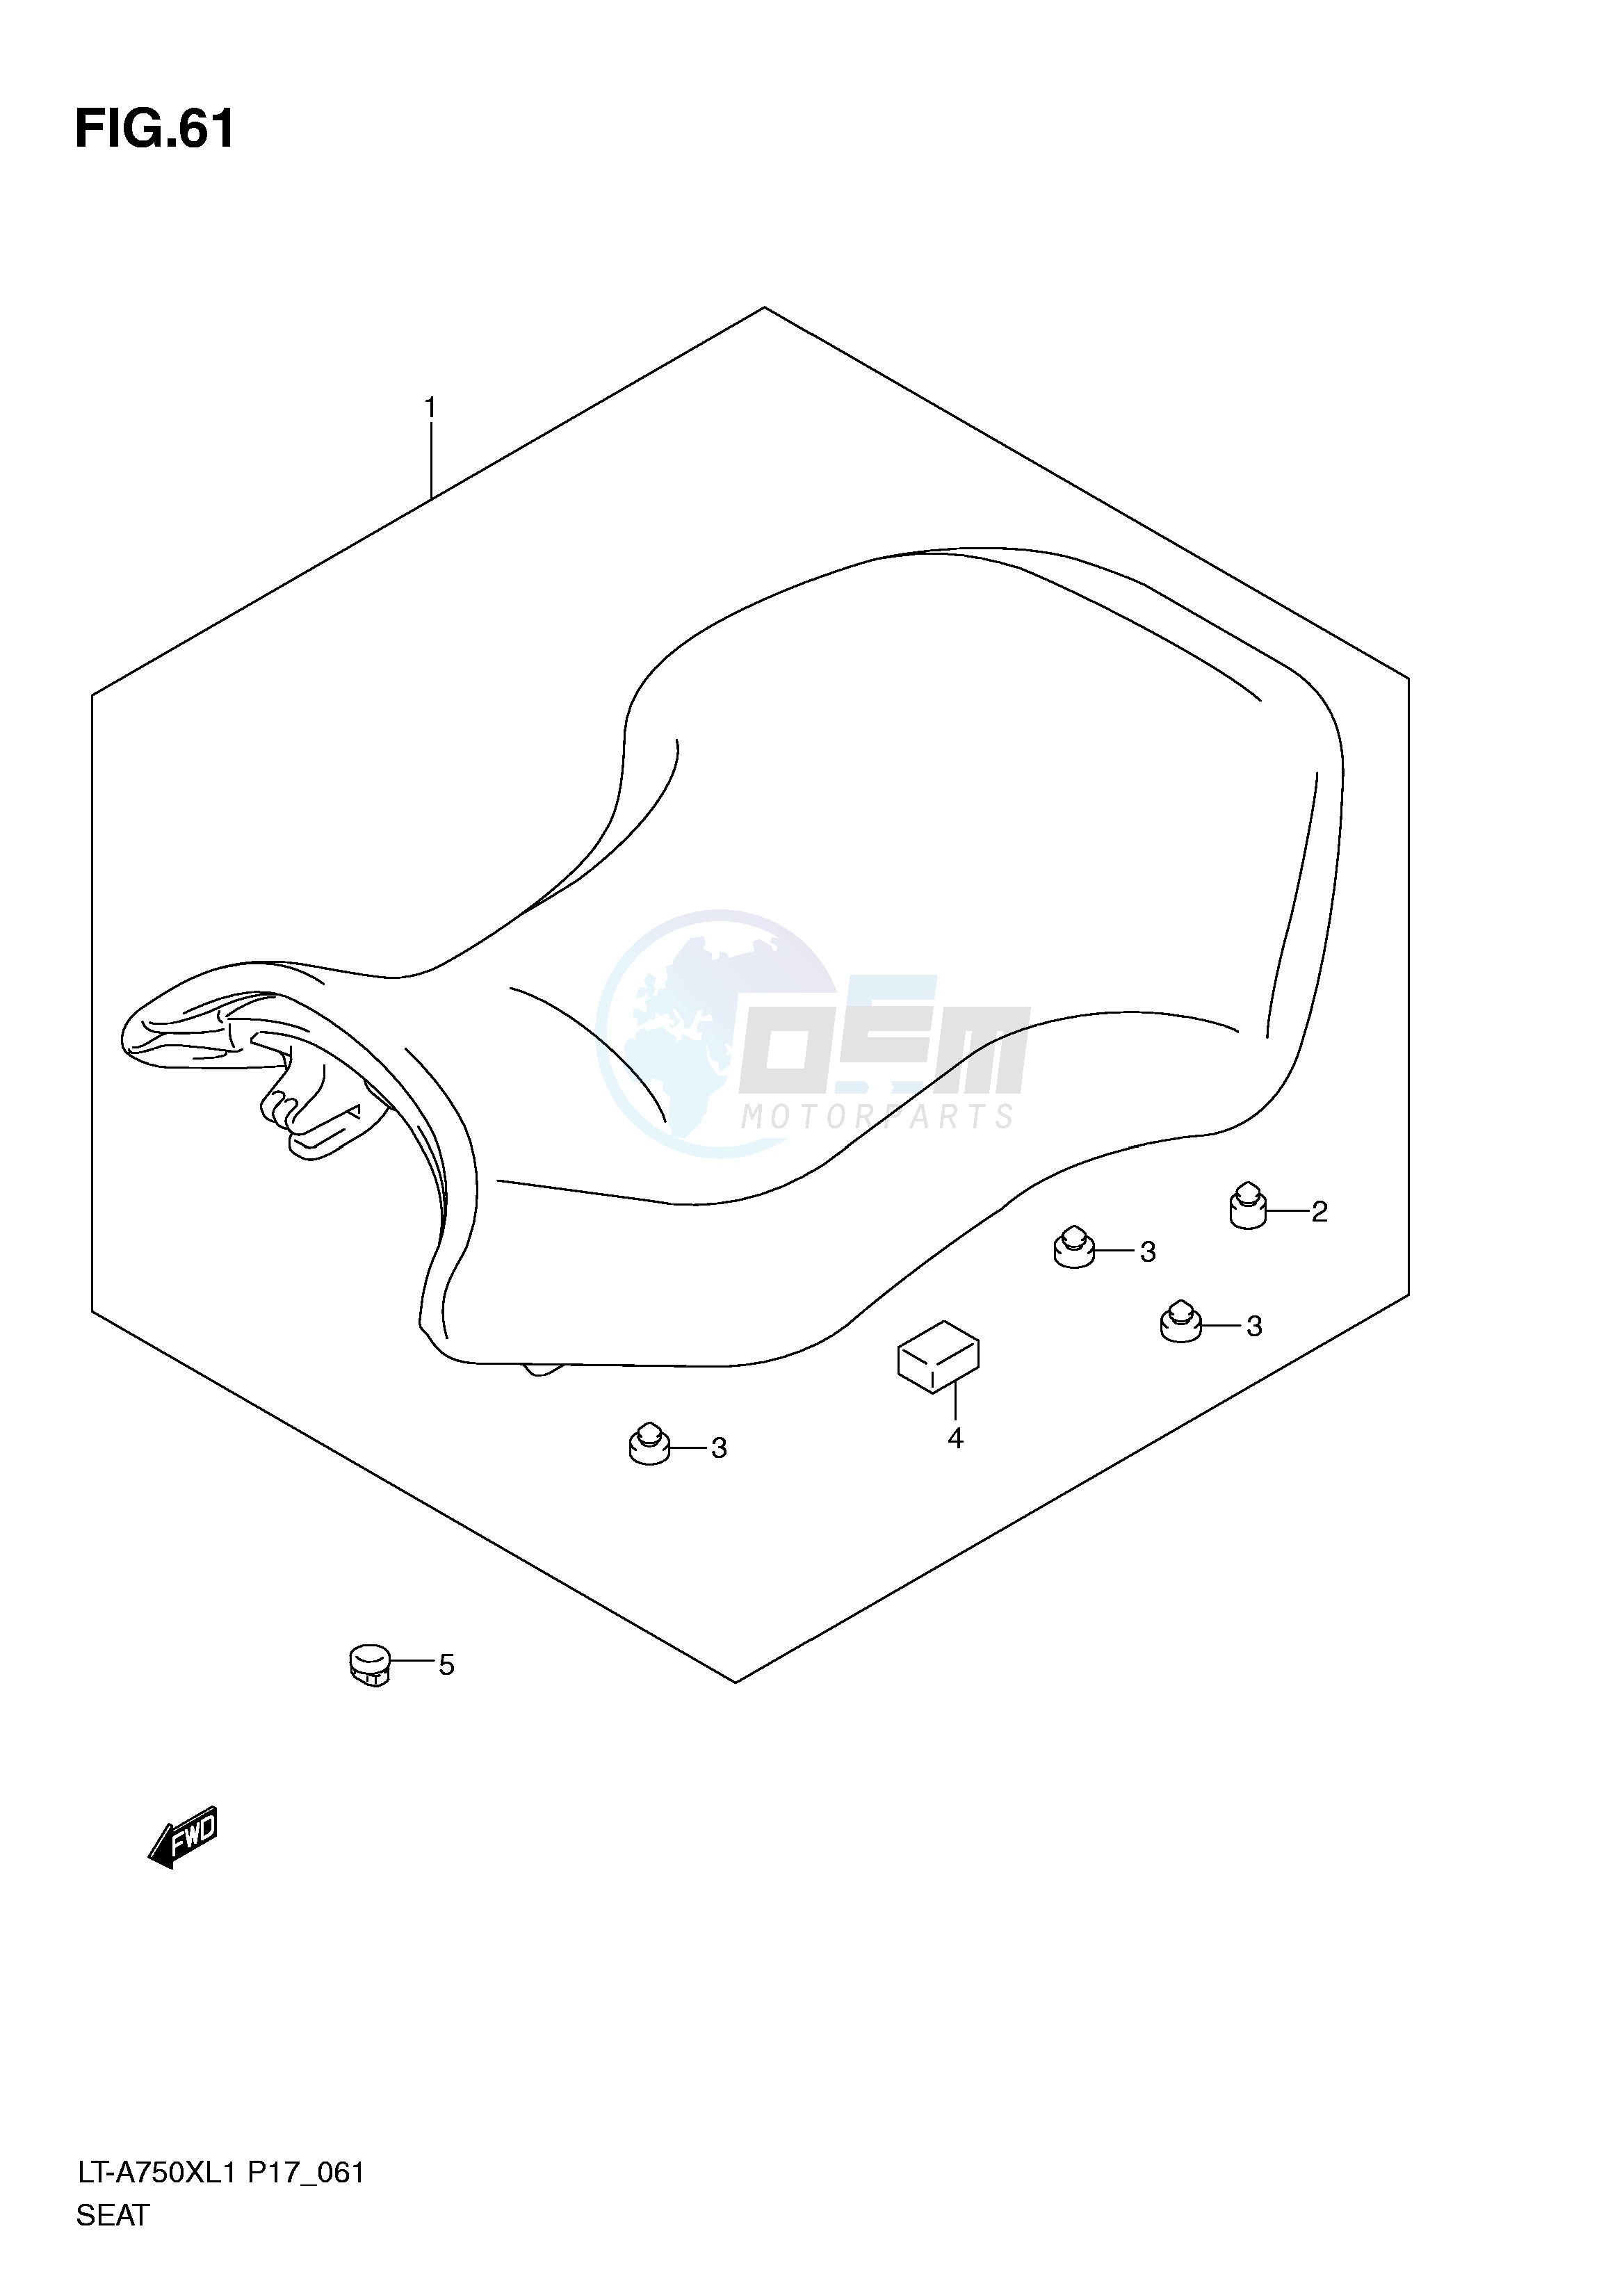 SEAT (LT-A750XL1 P17) blueprint